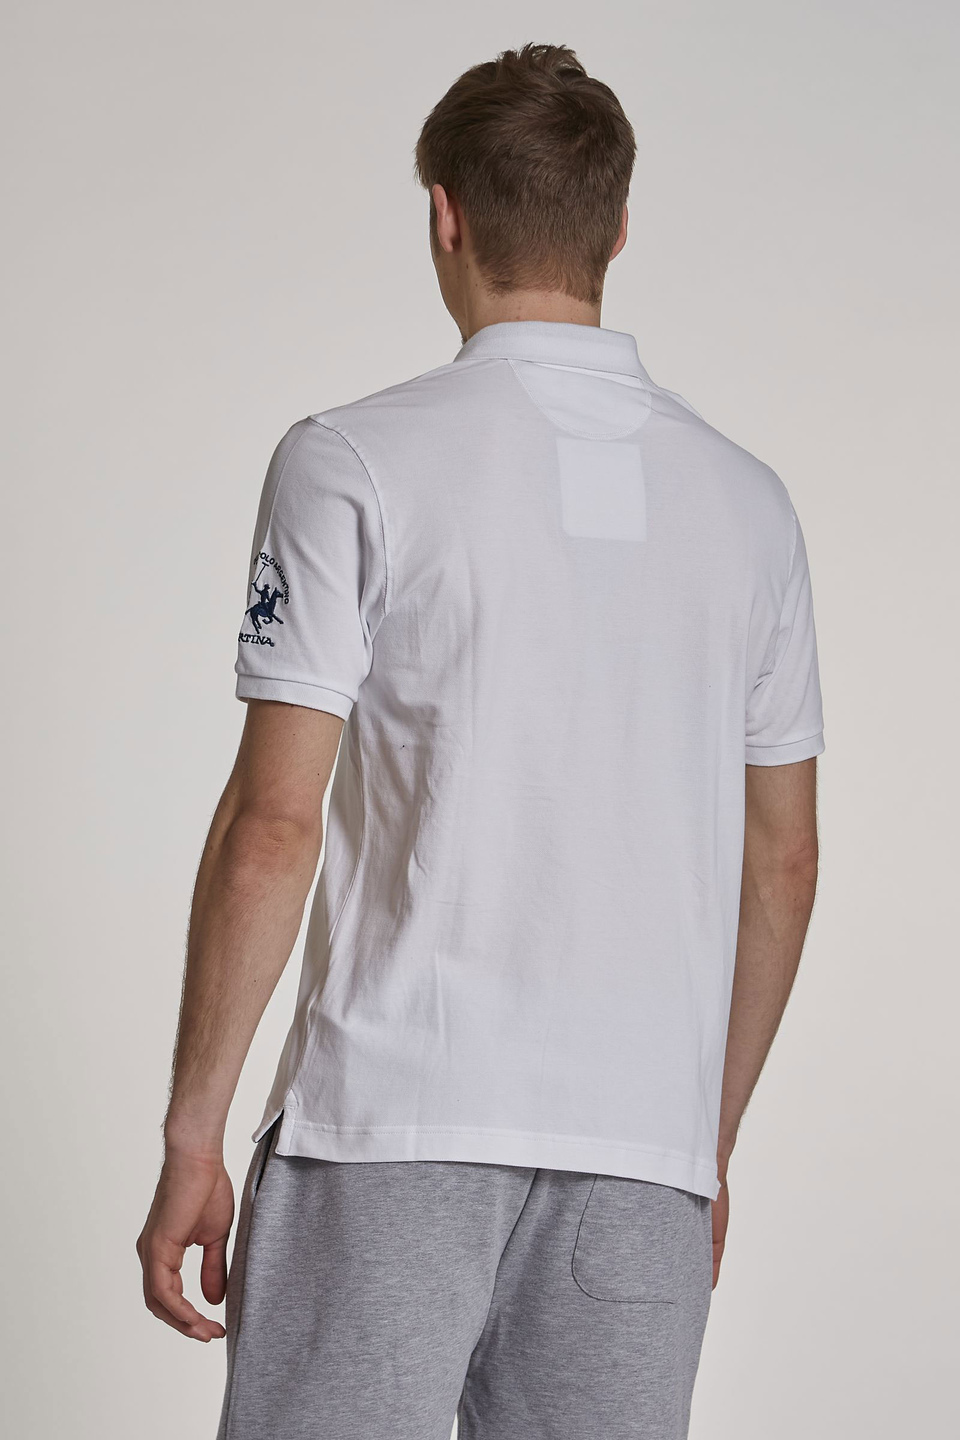 Herren-Poloshirt aus Stretch-Baumwolle mit kurzen Ärmeln im Regular Fit - La Martina - Official Online Shop